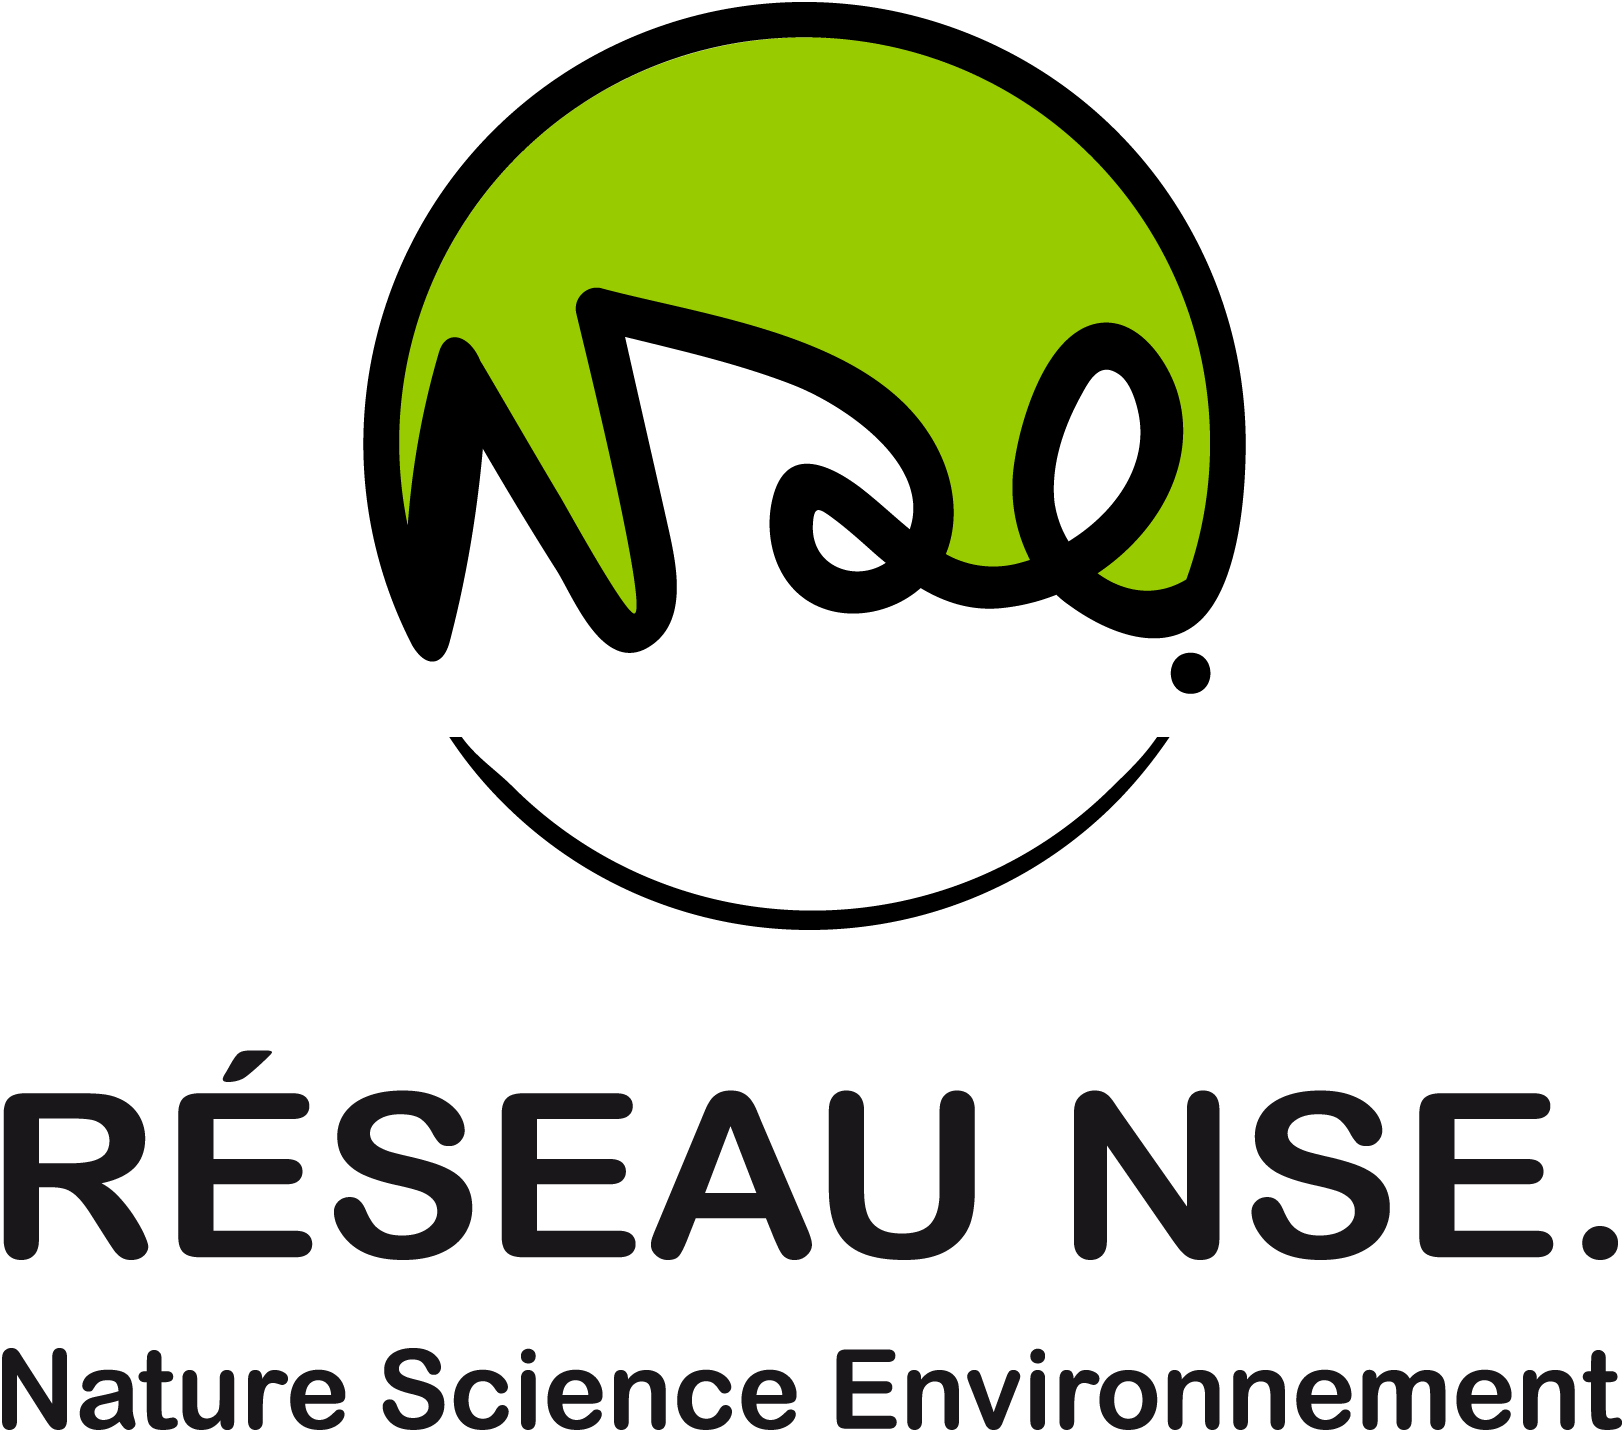 Réseau Nature Science Environnement